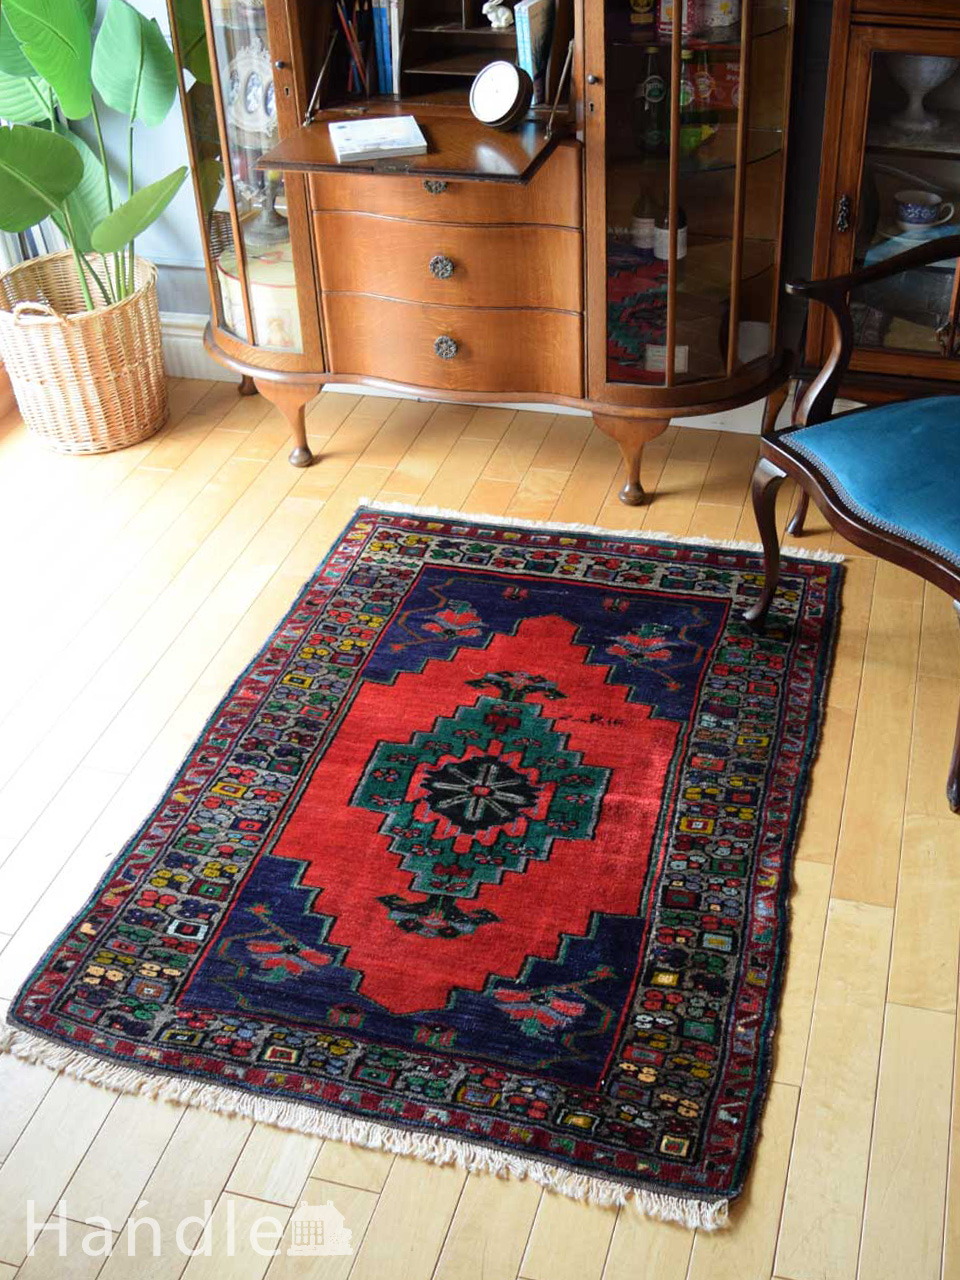 ビンテージのおしゃれな絨毯、トルココンヤの色が美しい一点もののトライバルラグ (m-5078-z)